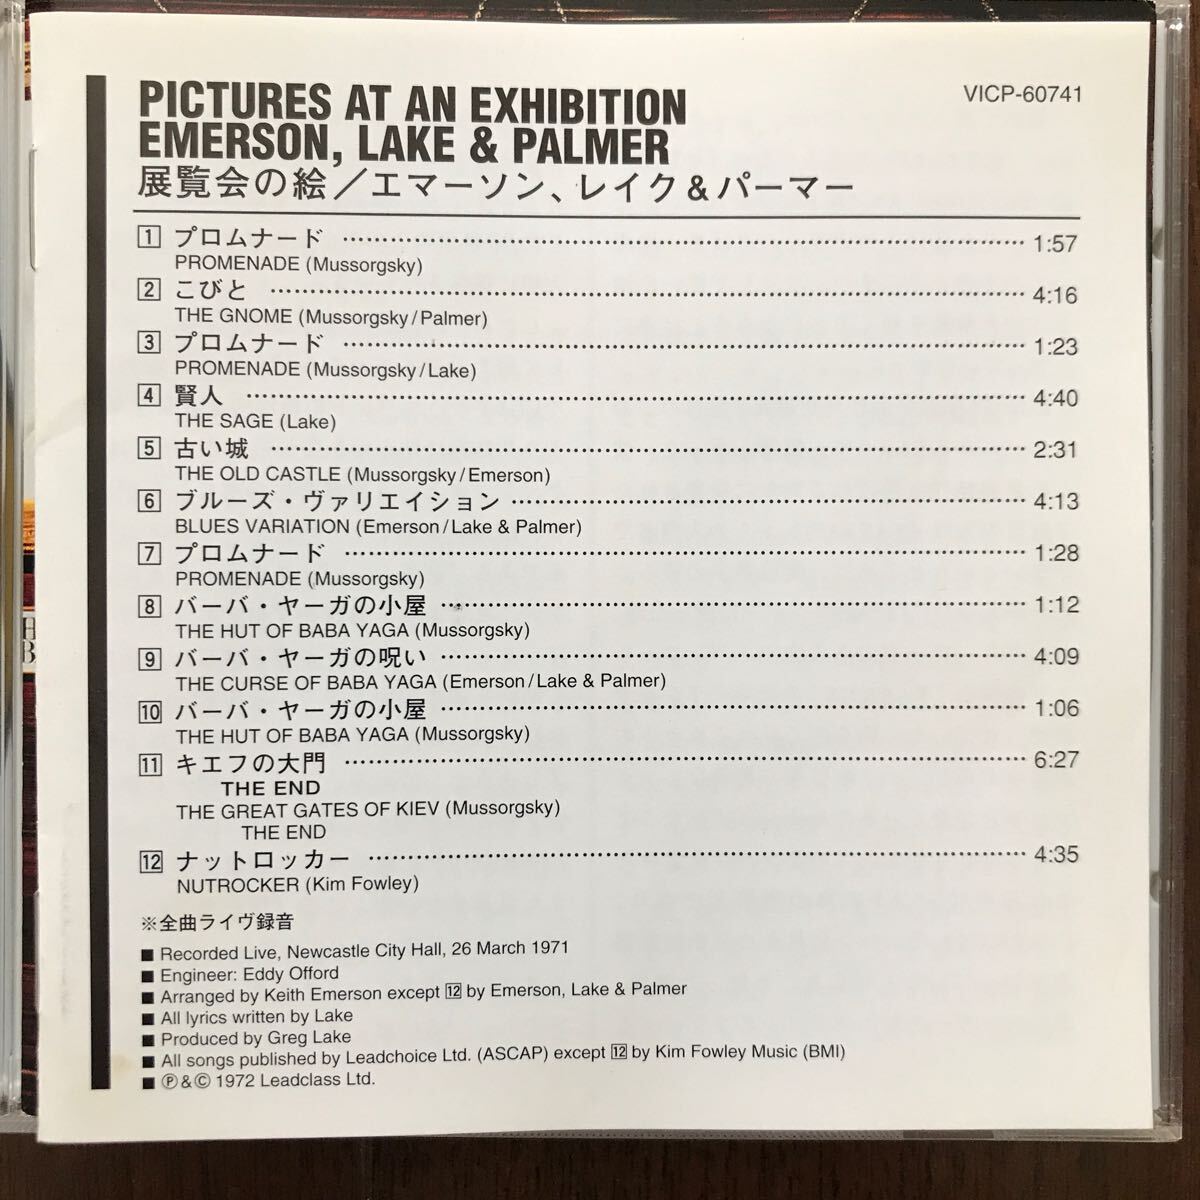  прекрасный товар CD EMARSON, LAKE & PALMER/PICTURES AT AN EXHIBITION записано в Японии ema-son, Ray k& химическая завивка -